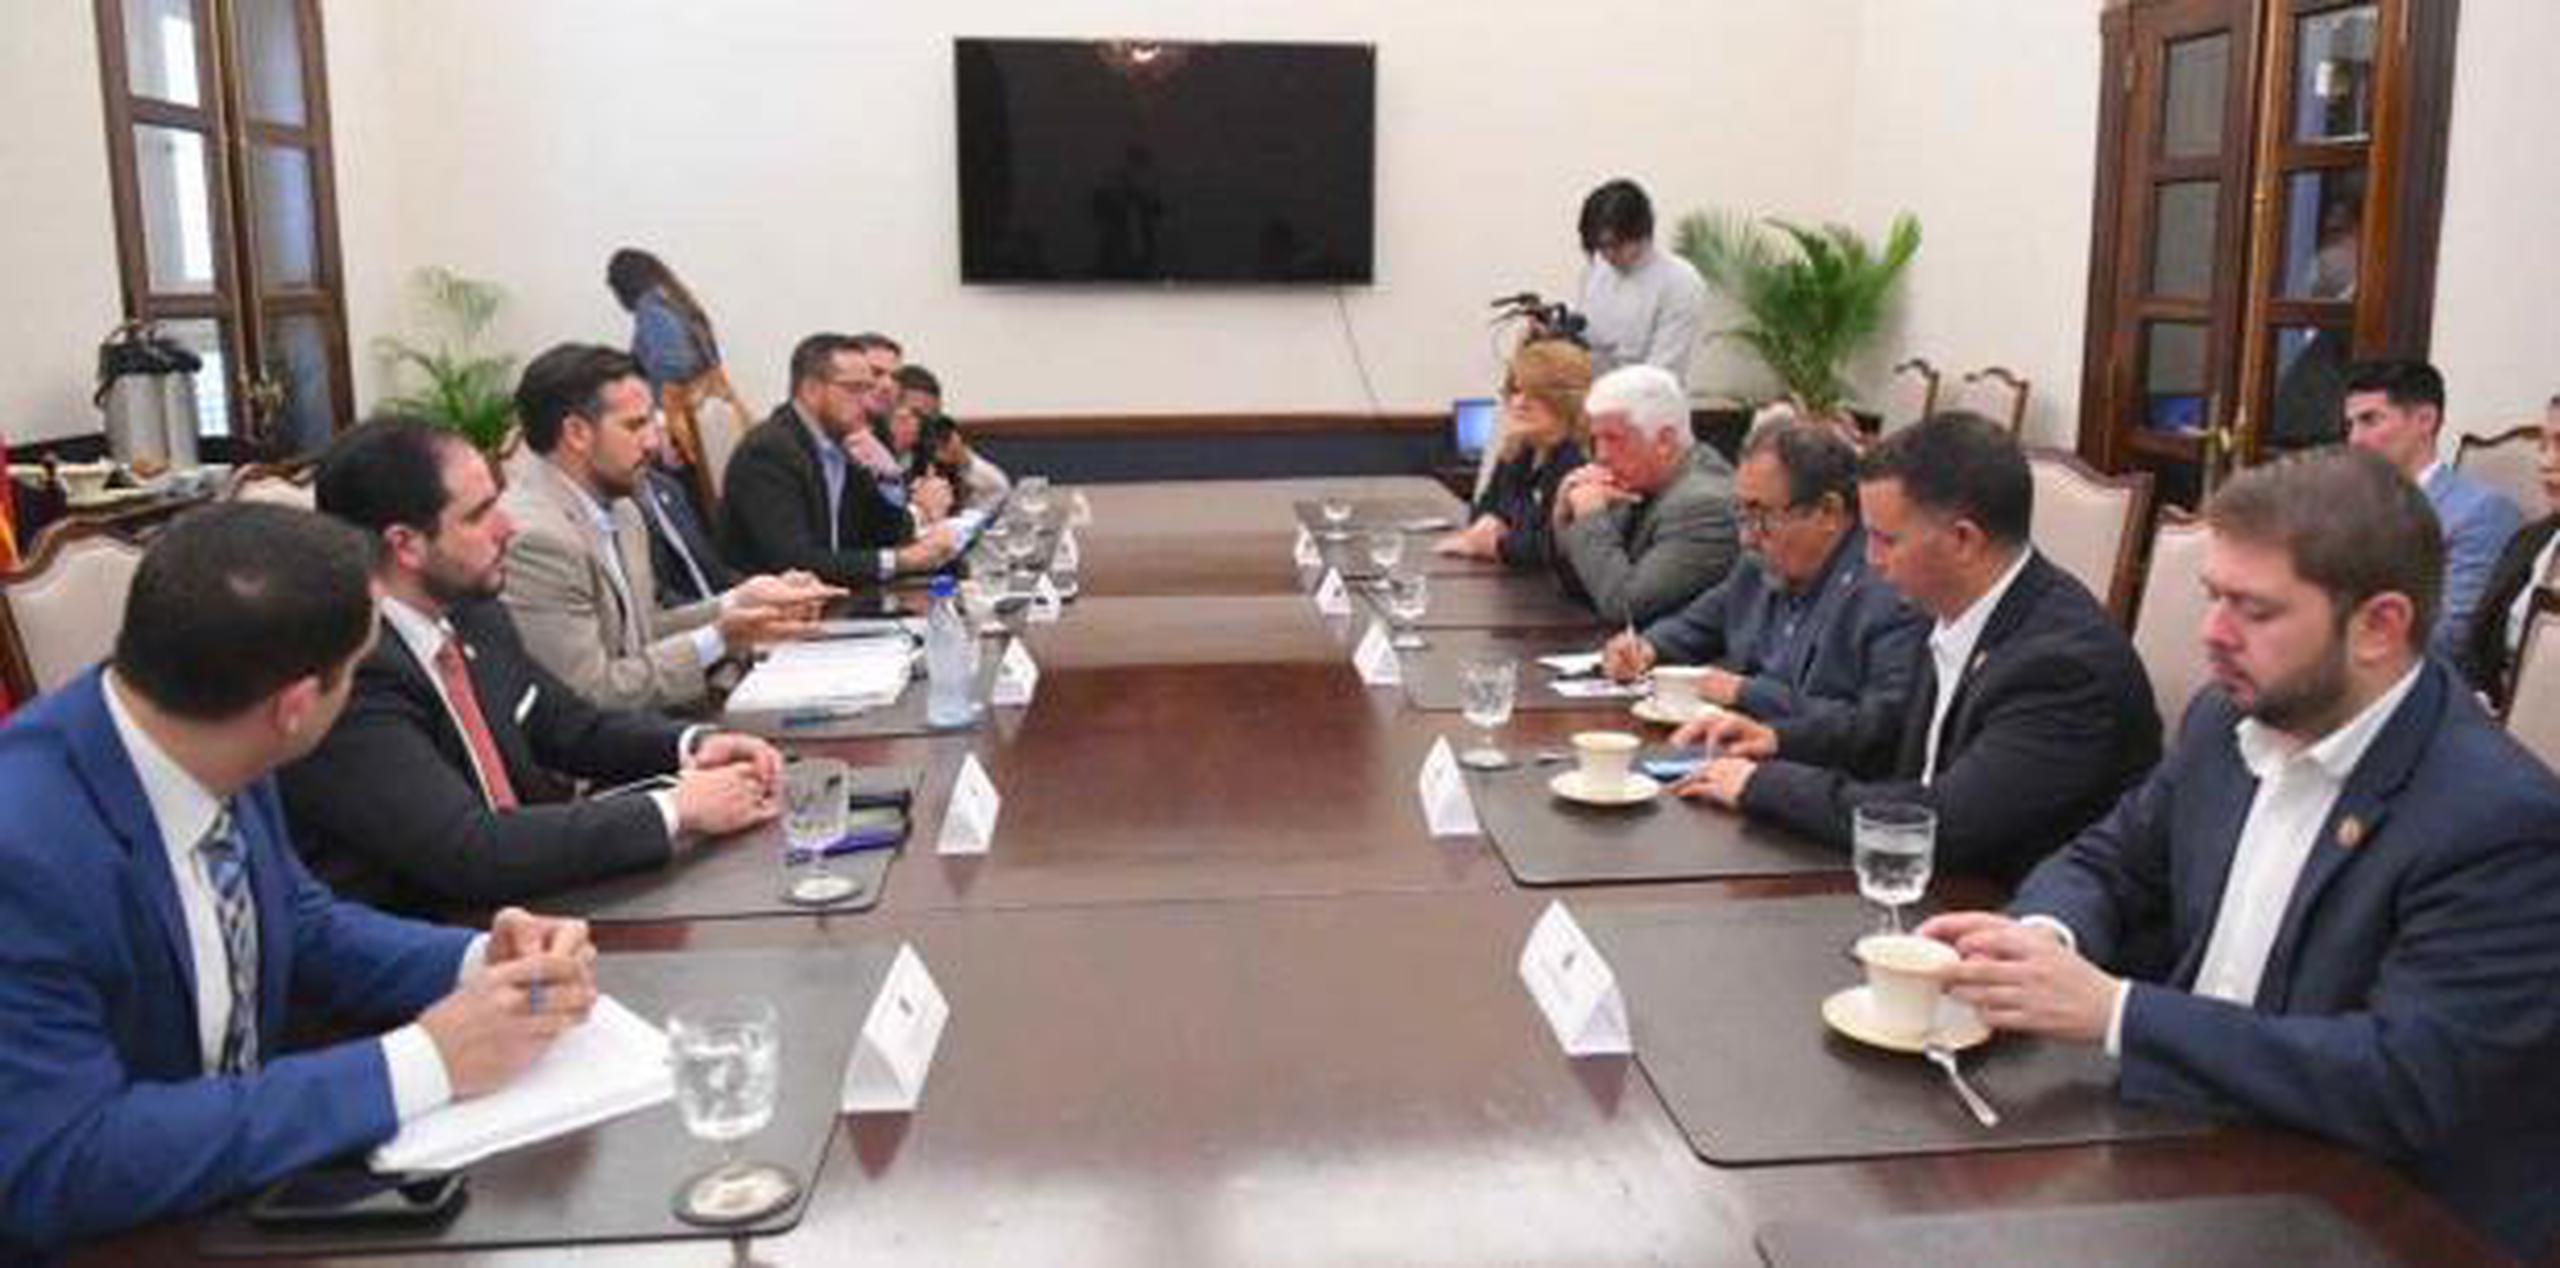 Los congresistas se reúnen con el gobernador Ricardo Rosselló Nevares y miembros de su gabinete. (Suministrada)